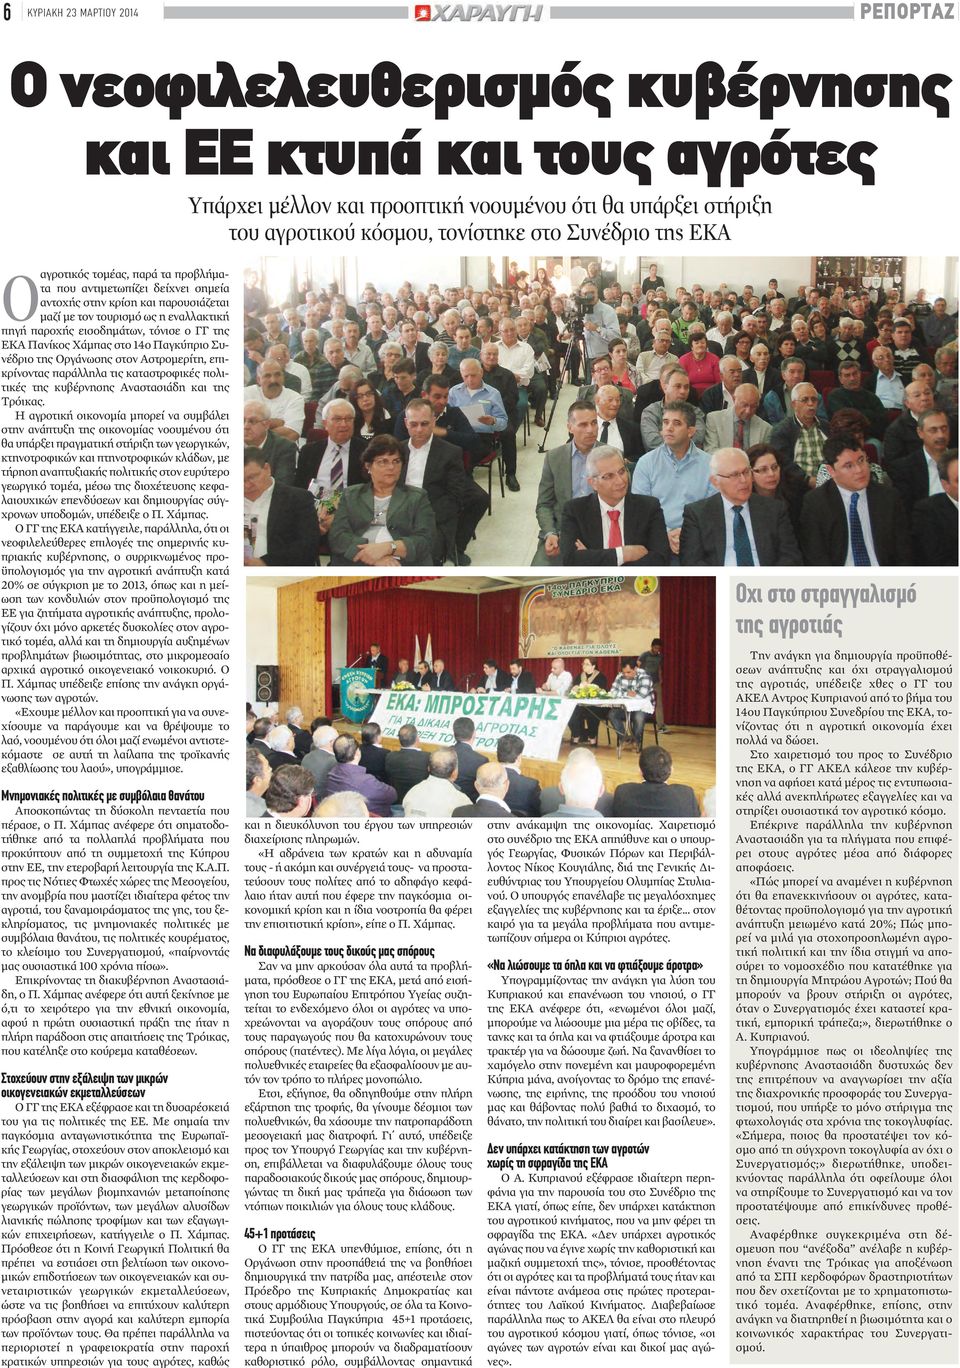 ΓΓ της ΕΚΑ Πανίκος Χάμπας στο 14ο Παγκύπριο Συνέδριο της Οργάνωσης στον Αστρομερίτη, επικρίνοντας παράλληλα τις καταστροφικές πολιτικές της κυβέρνησης Αναστασιάδη και της Τρόικας.